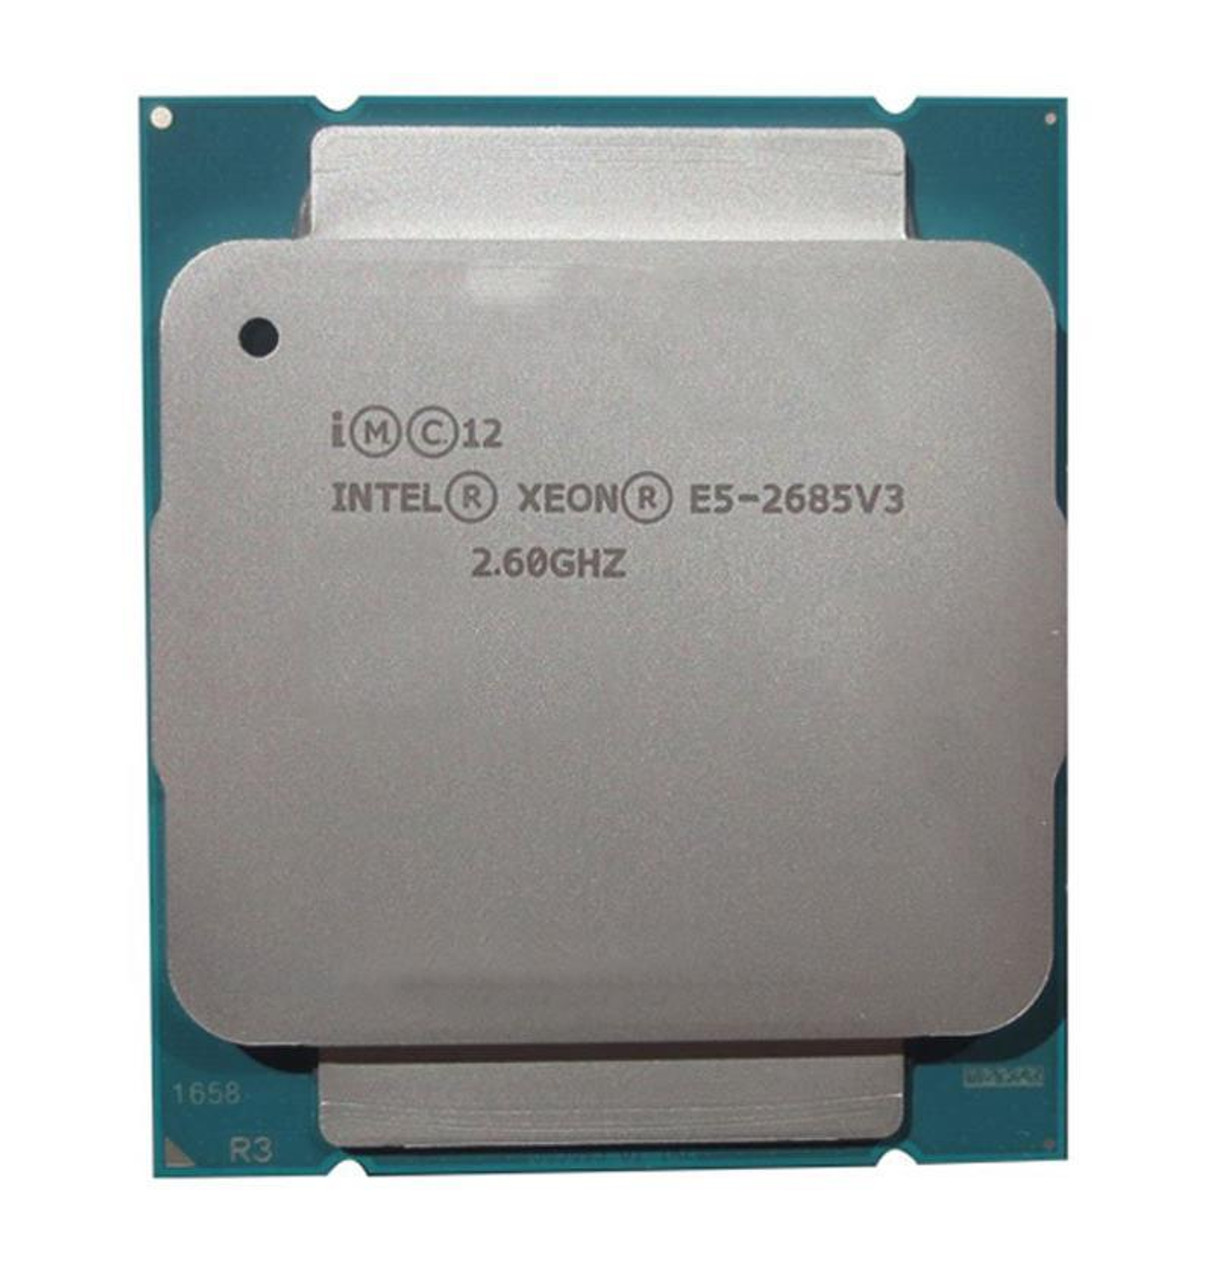 Lenovo 2.60GHz 9.60GT/s QPI 30MB L3 Cache Intel Xeon E5-2685 v3 12-Core Processor Upgrade